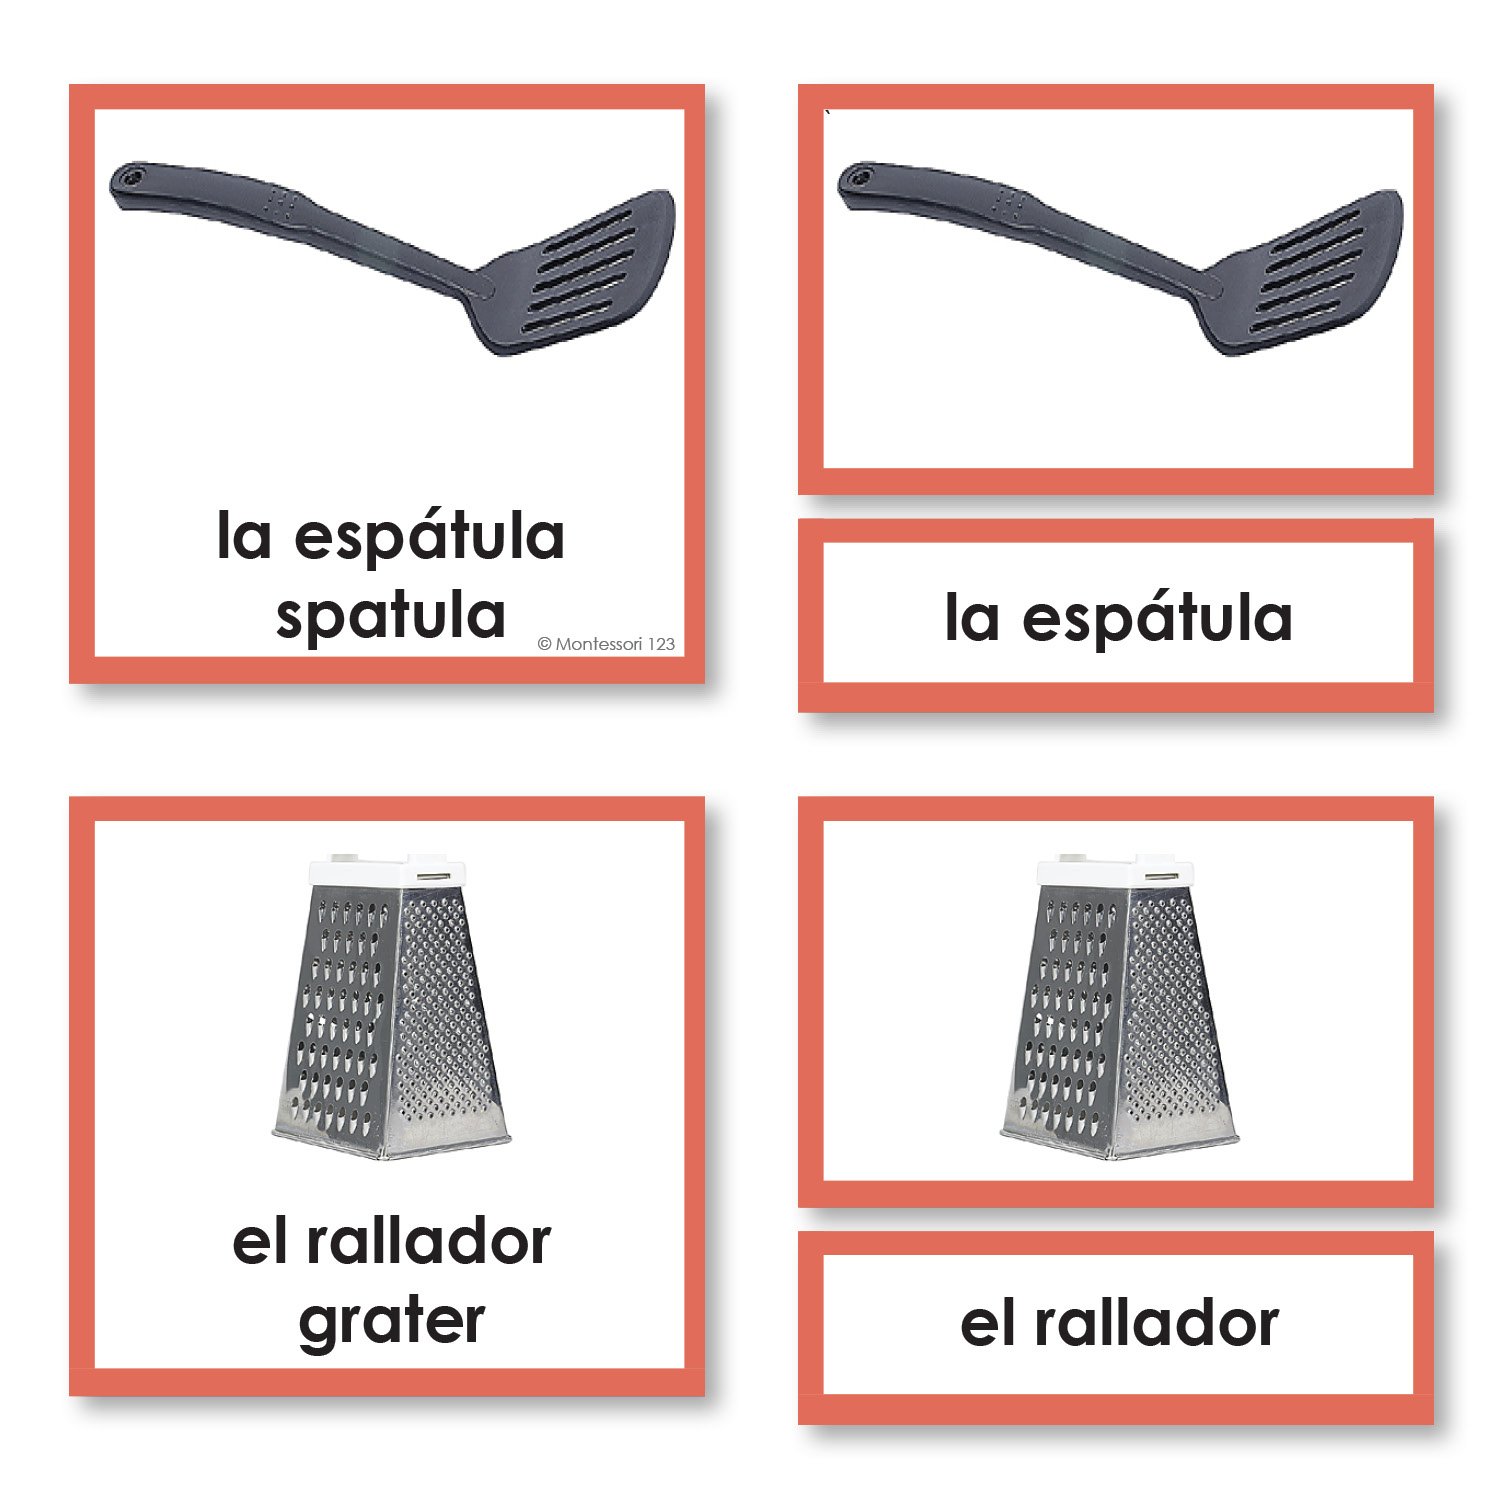 Language Arts-Spanish - Spanish Language Kitchen 3-Part Cards With Photographs